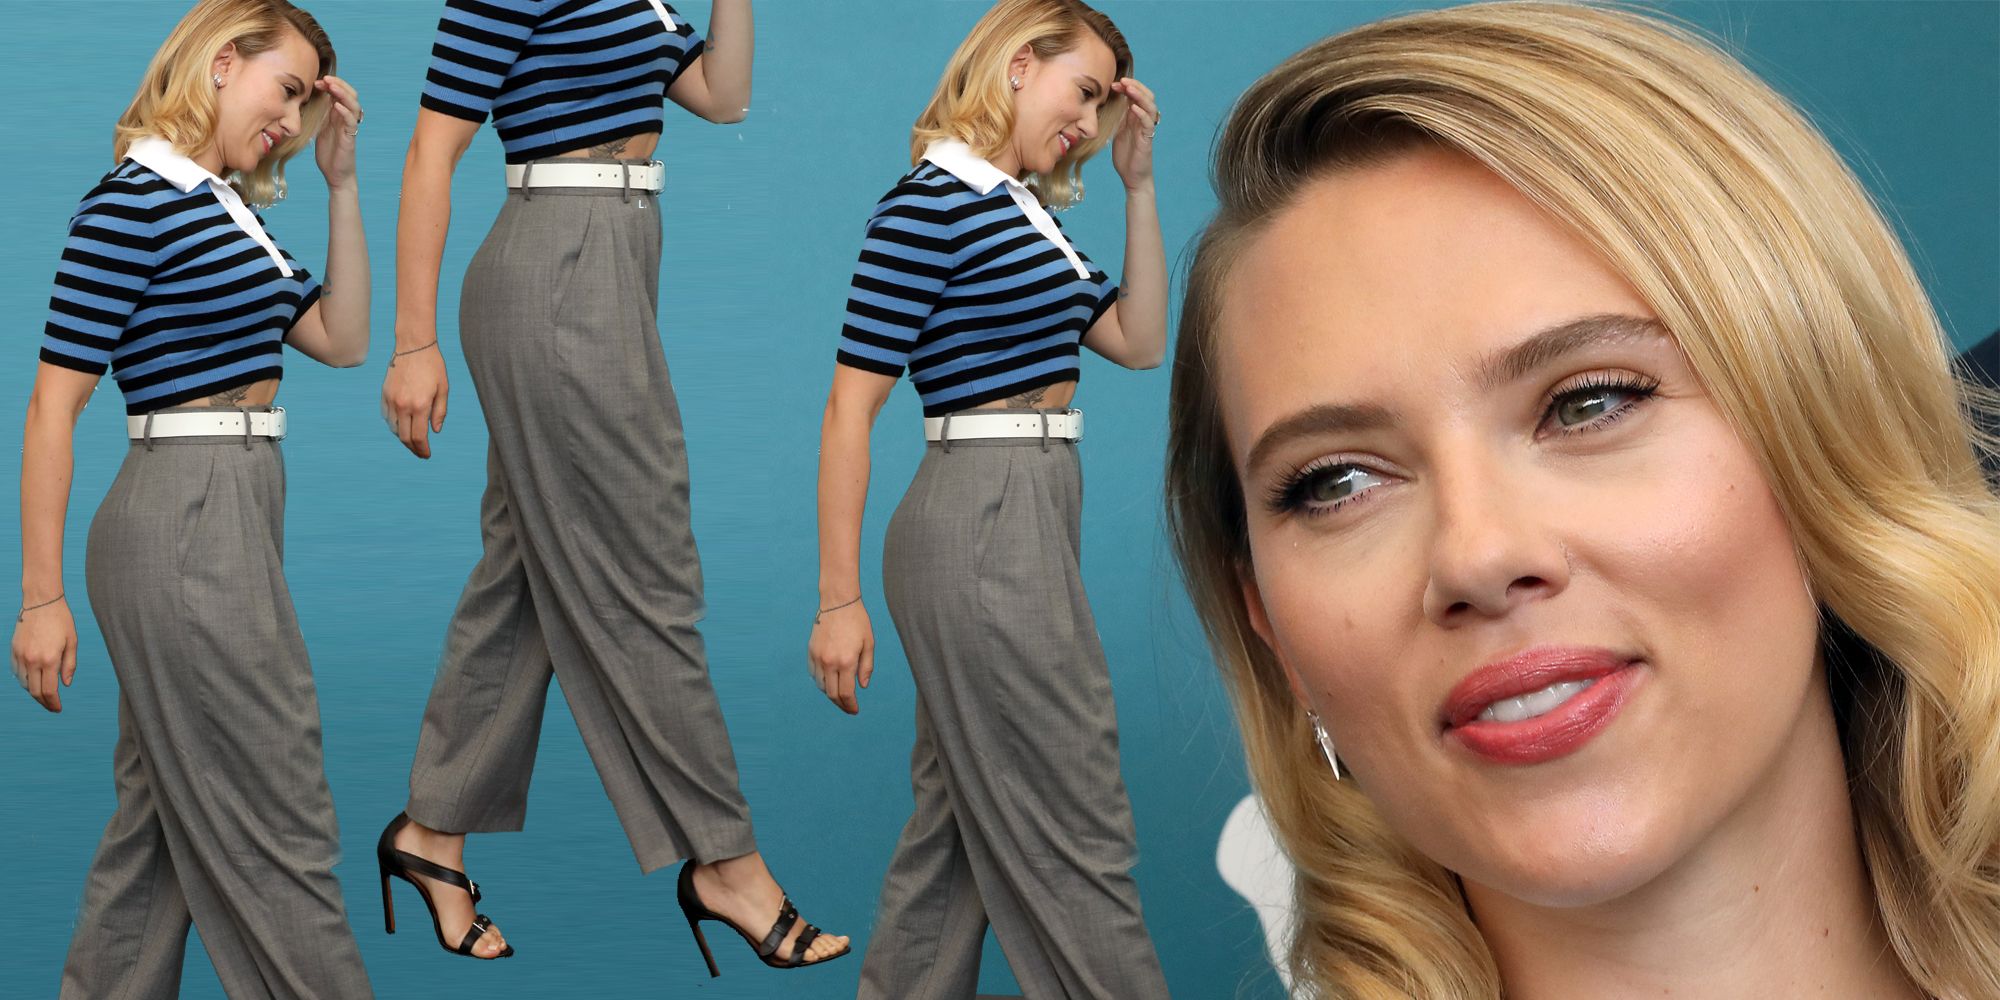 Solo un metro e sessanta per Scarlett Johansson che approda a Venezia 2019 con un look giorno con pantaloni larghi a palazzo e guadagna subito 10 cmi in più.